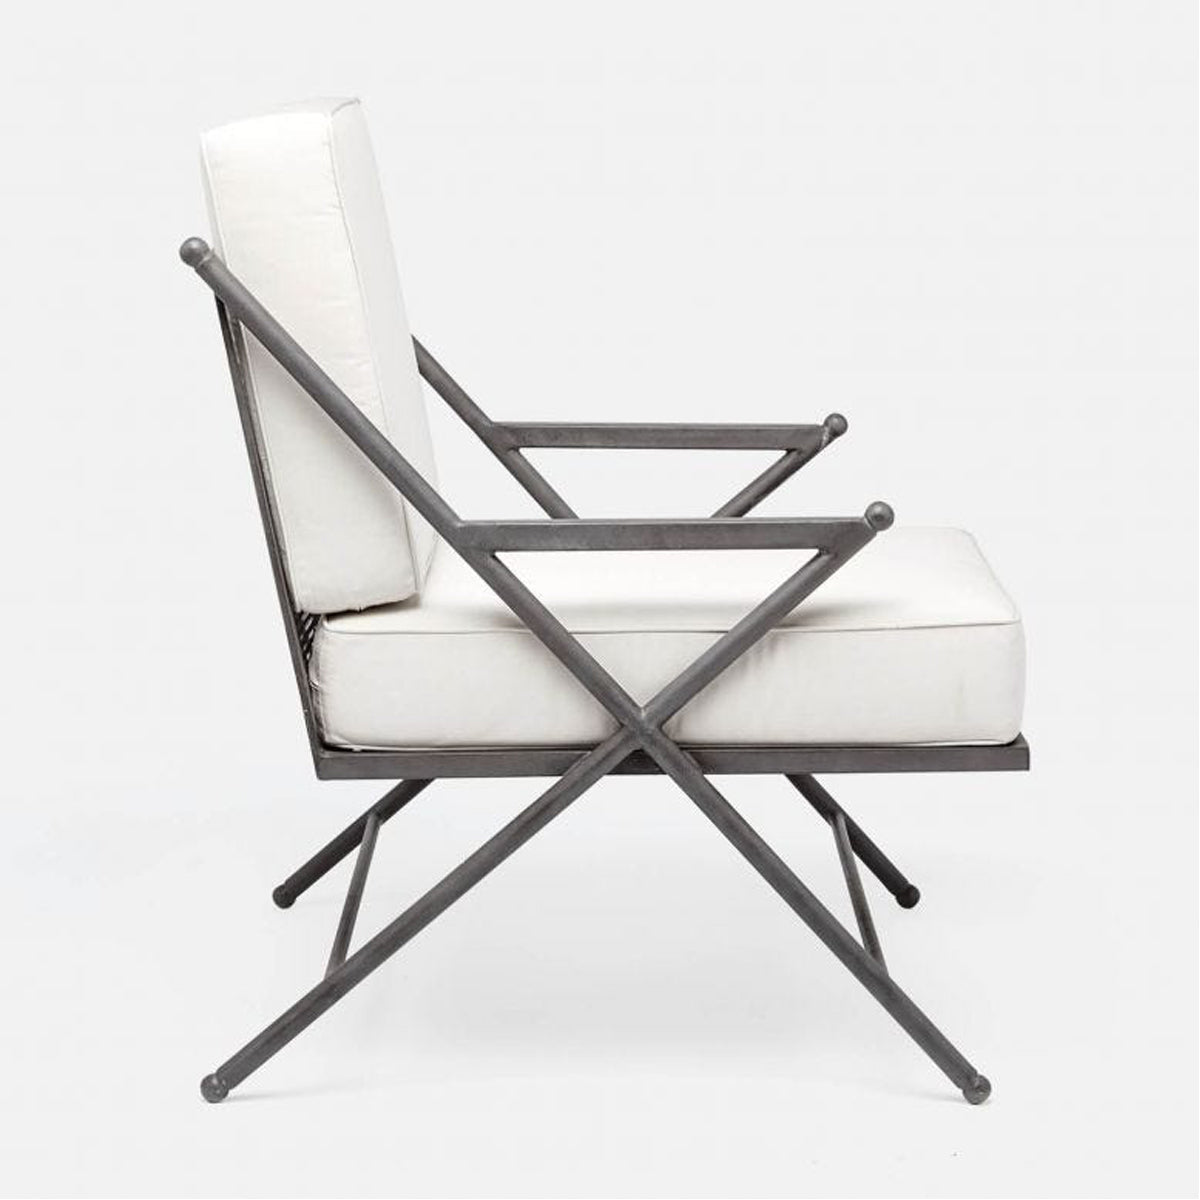 Made Goods Balta Metal XL Outdoor Lounge Chair, Clyde Fabric